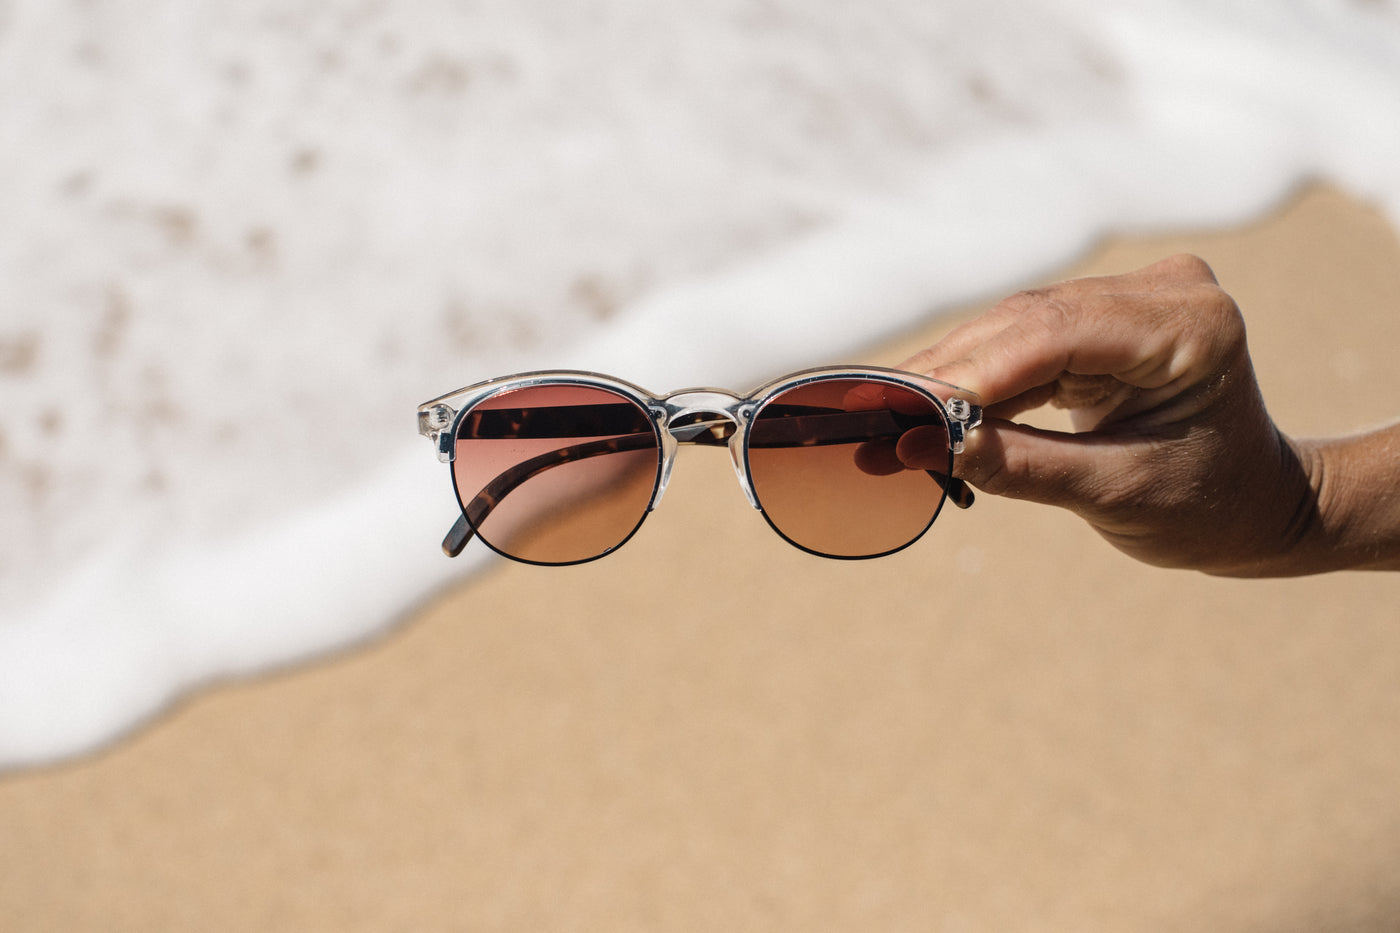 Sunski Avila Sunglasses Clear Tort Terra Fade - Radical Giving